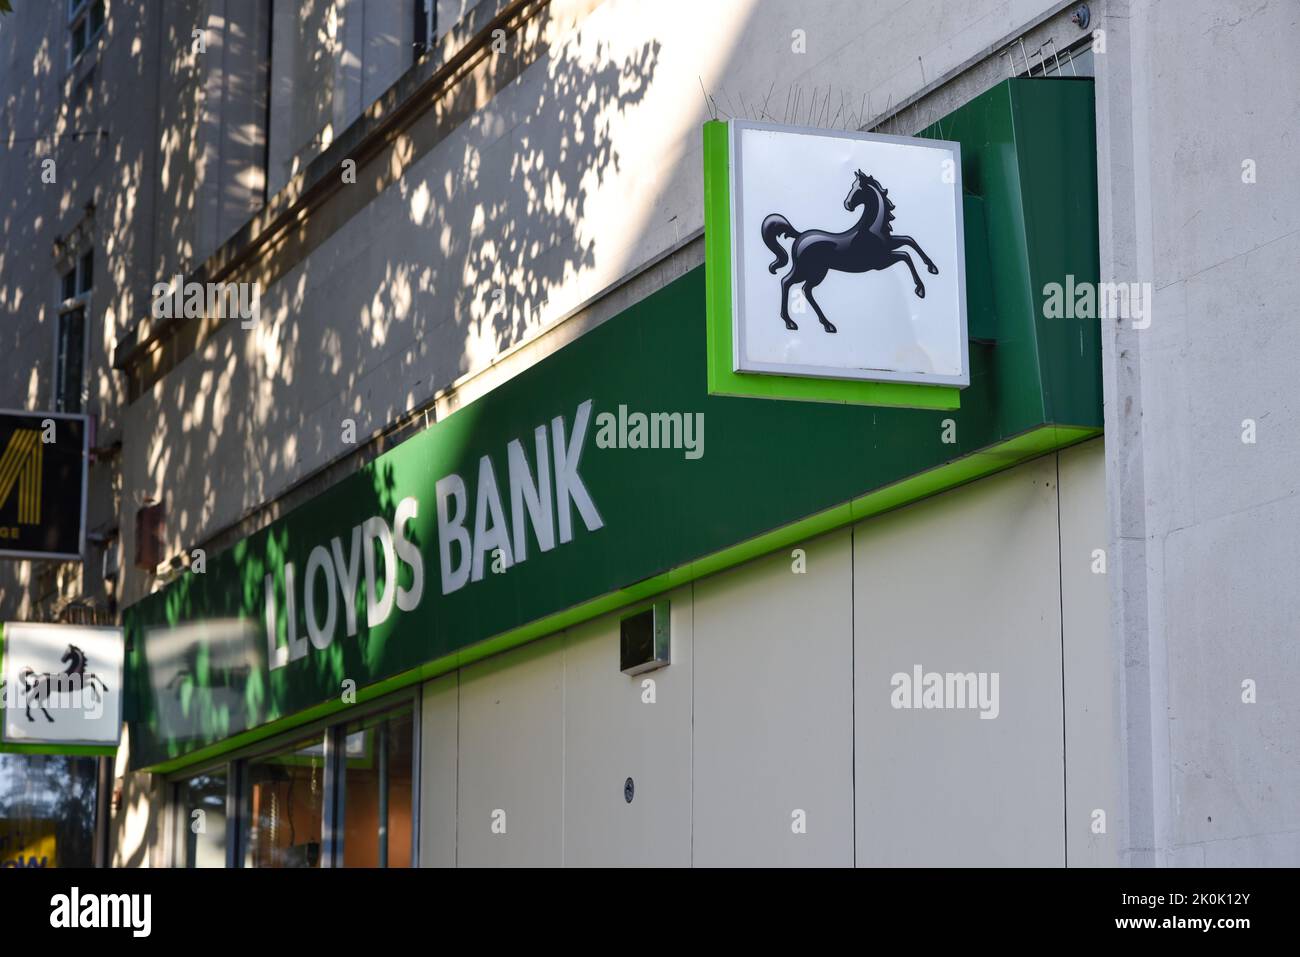 Außenansicht einer Lloyds Bank High Street Filiale in England mit dem Namen und dem berühmten schwarzen Pferdemogo. Stockfoto